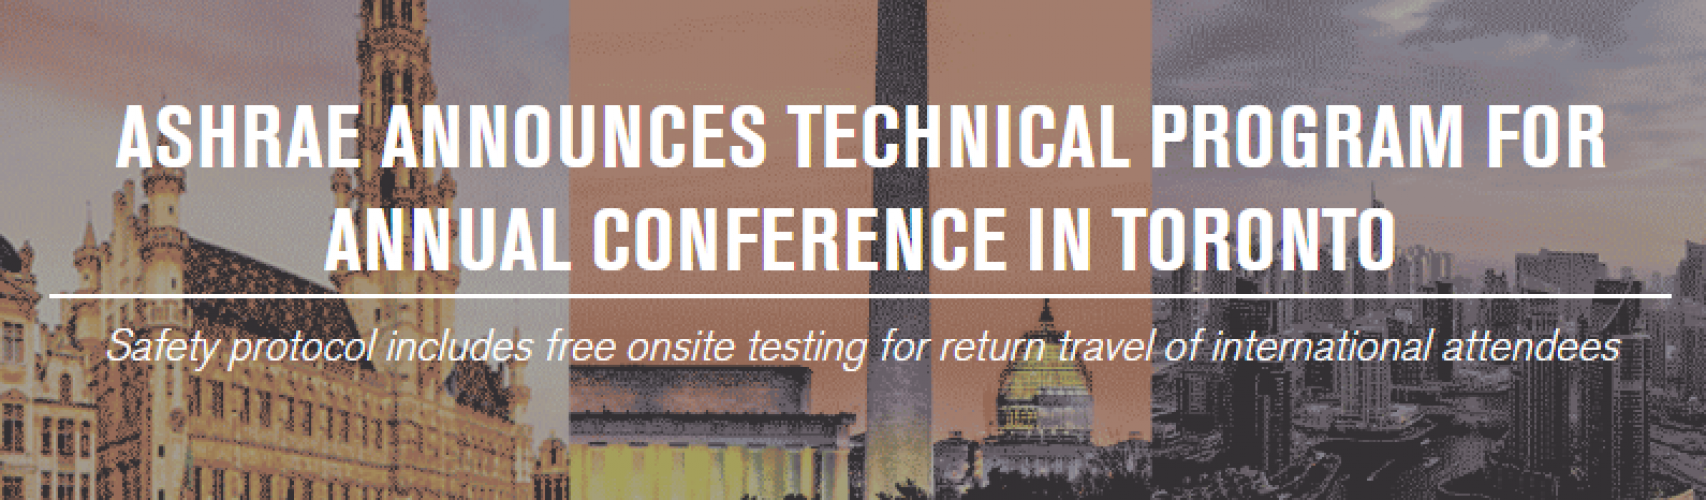 ASHRAE anuncia el programa técnico para la conferencia anual en Toronto